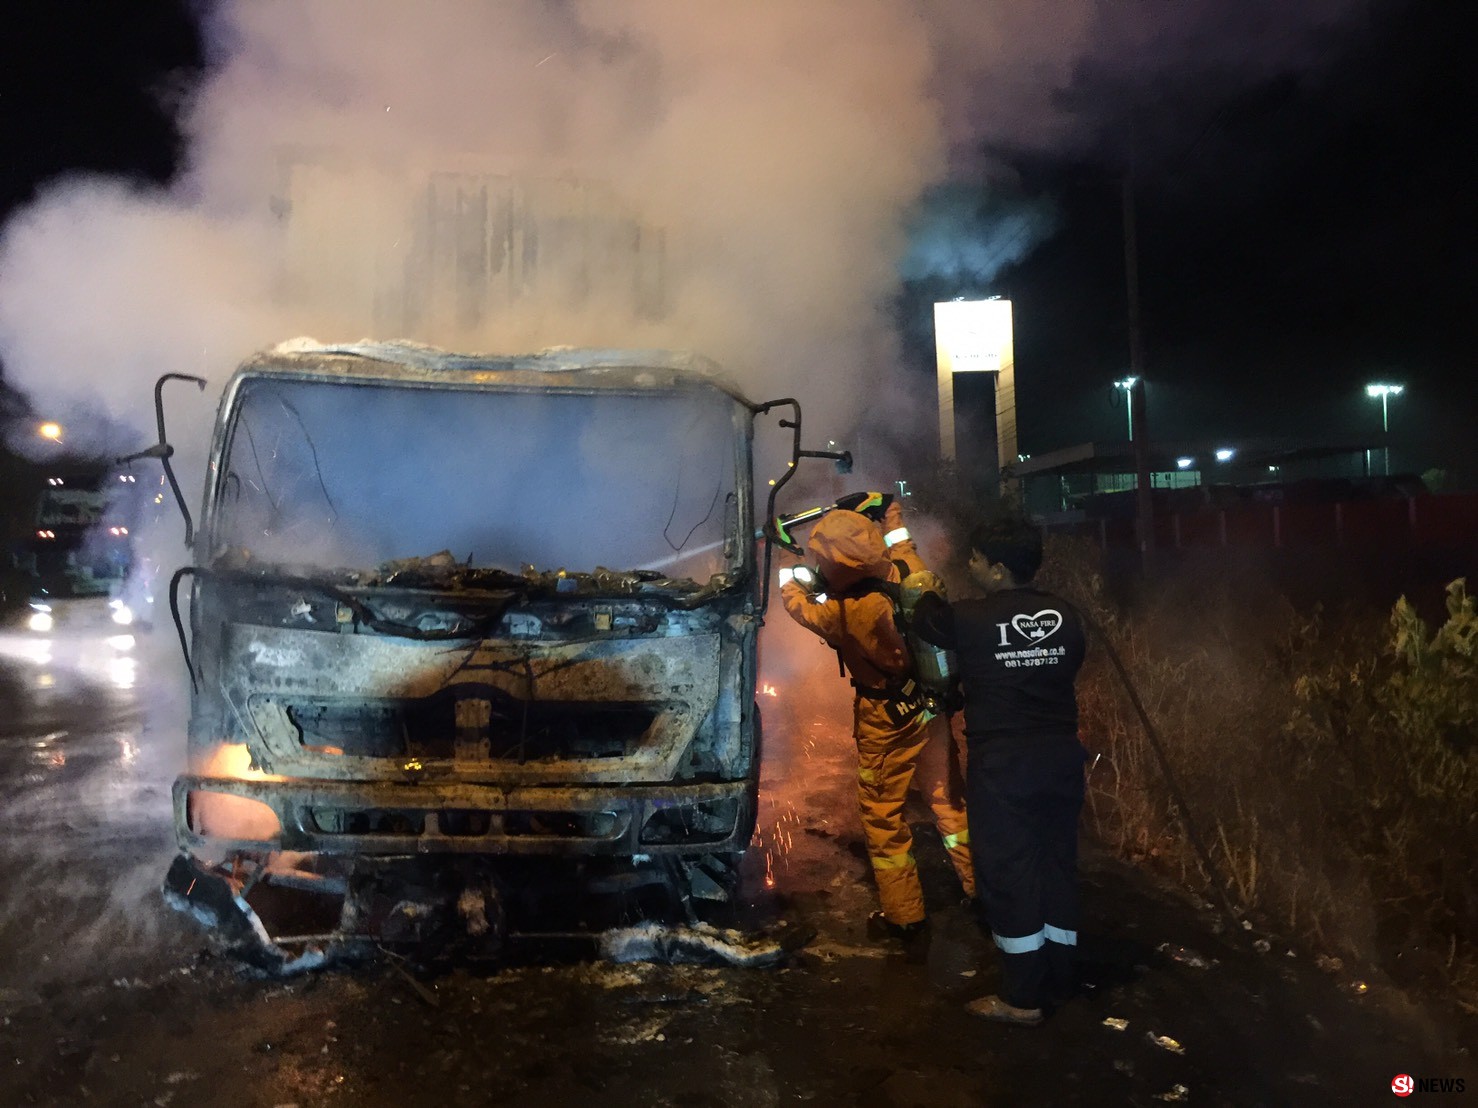 โคราช-ไฟไหม้รถบรรทุกพ่วง 18 ล้อ คนขับรอดตายหวุดหวิด